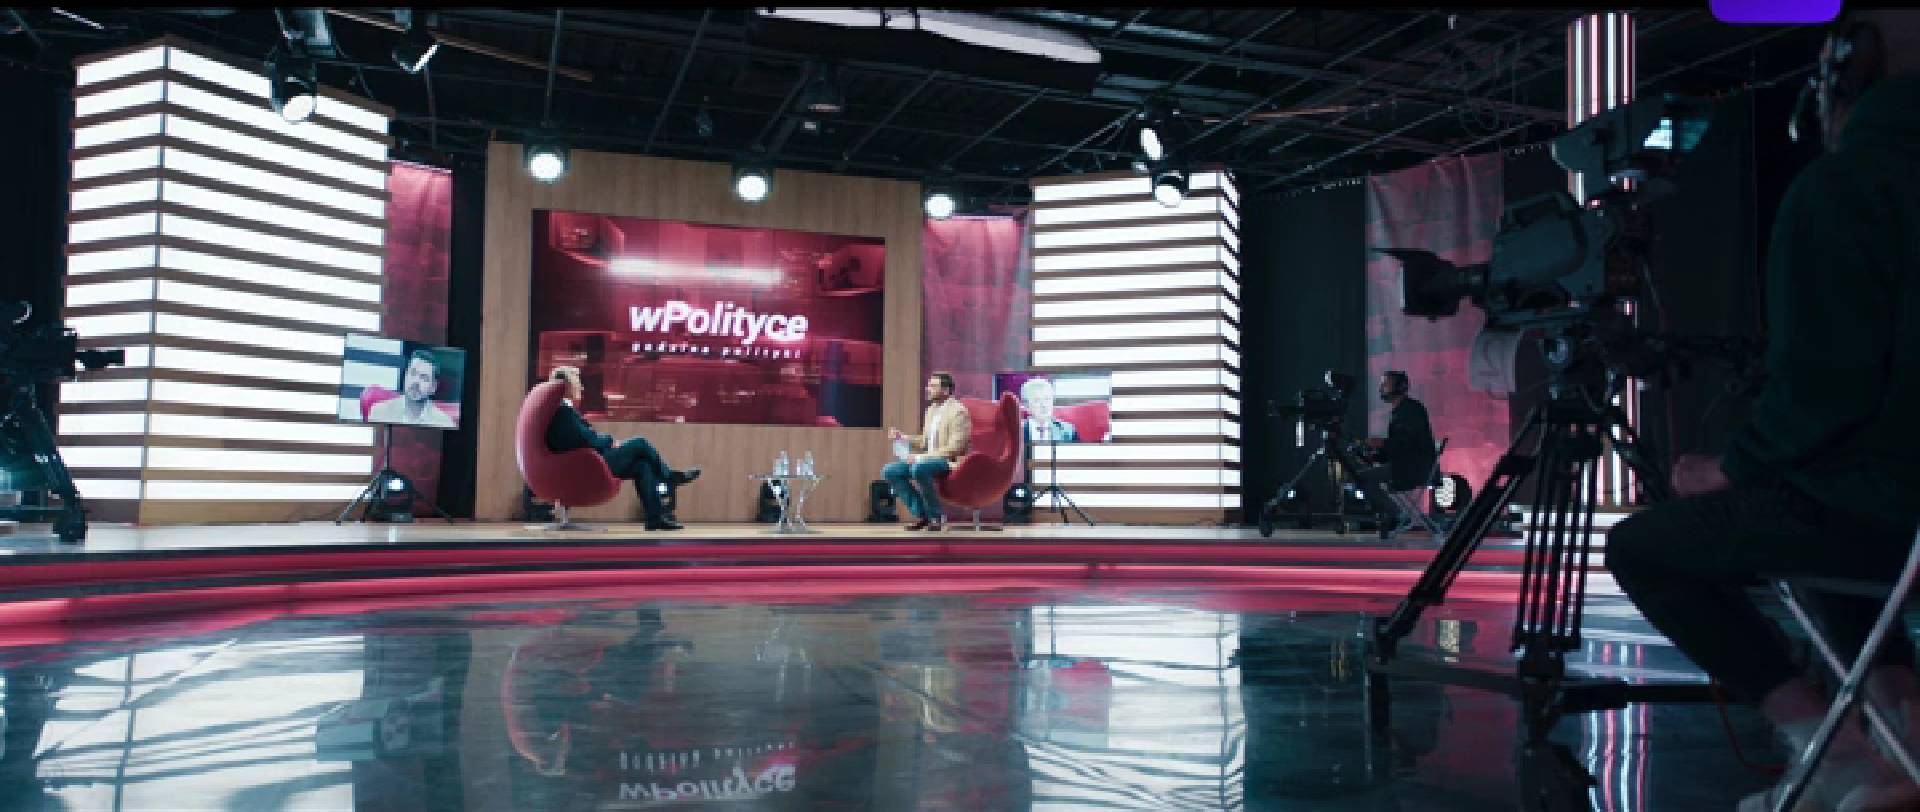 Studio telewizyjne z napisem "wPolityce", rozmawiają dwaj mężczyźni